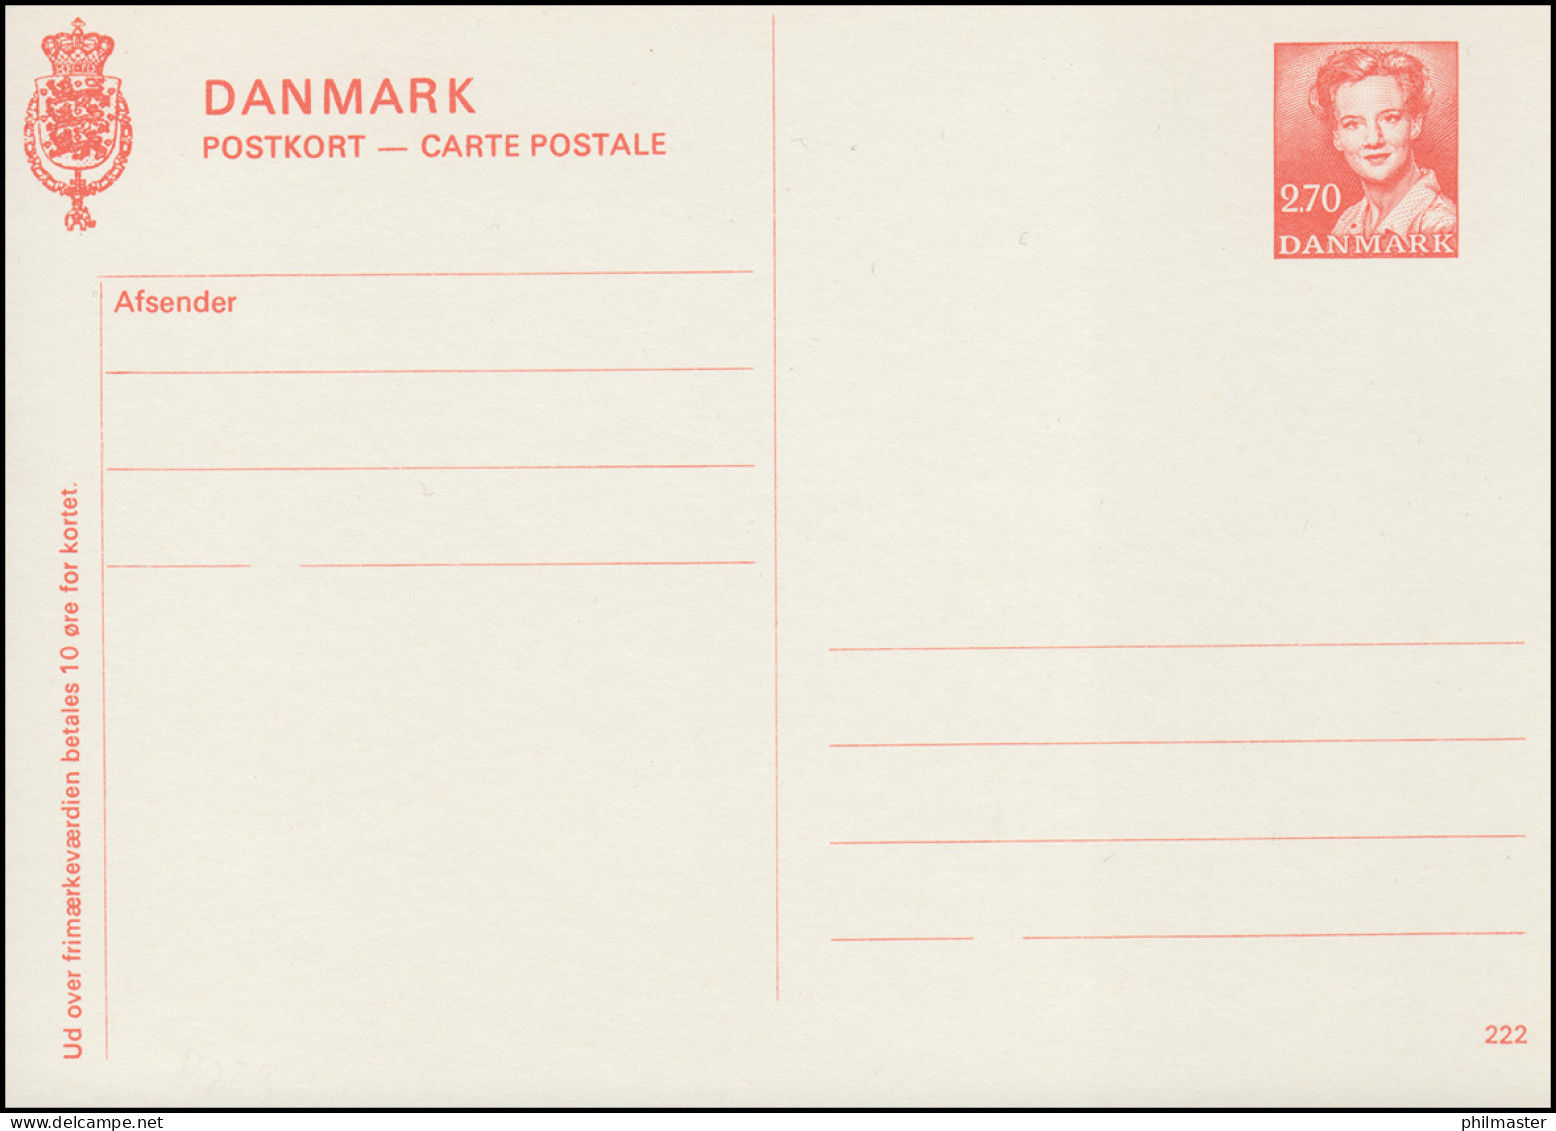 Dänemark Postkarte P 279 Königin Margrethe 2,70 Kronen, Kz. 222, ** - Postal Stationery